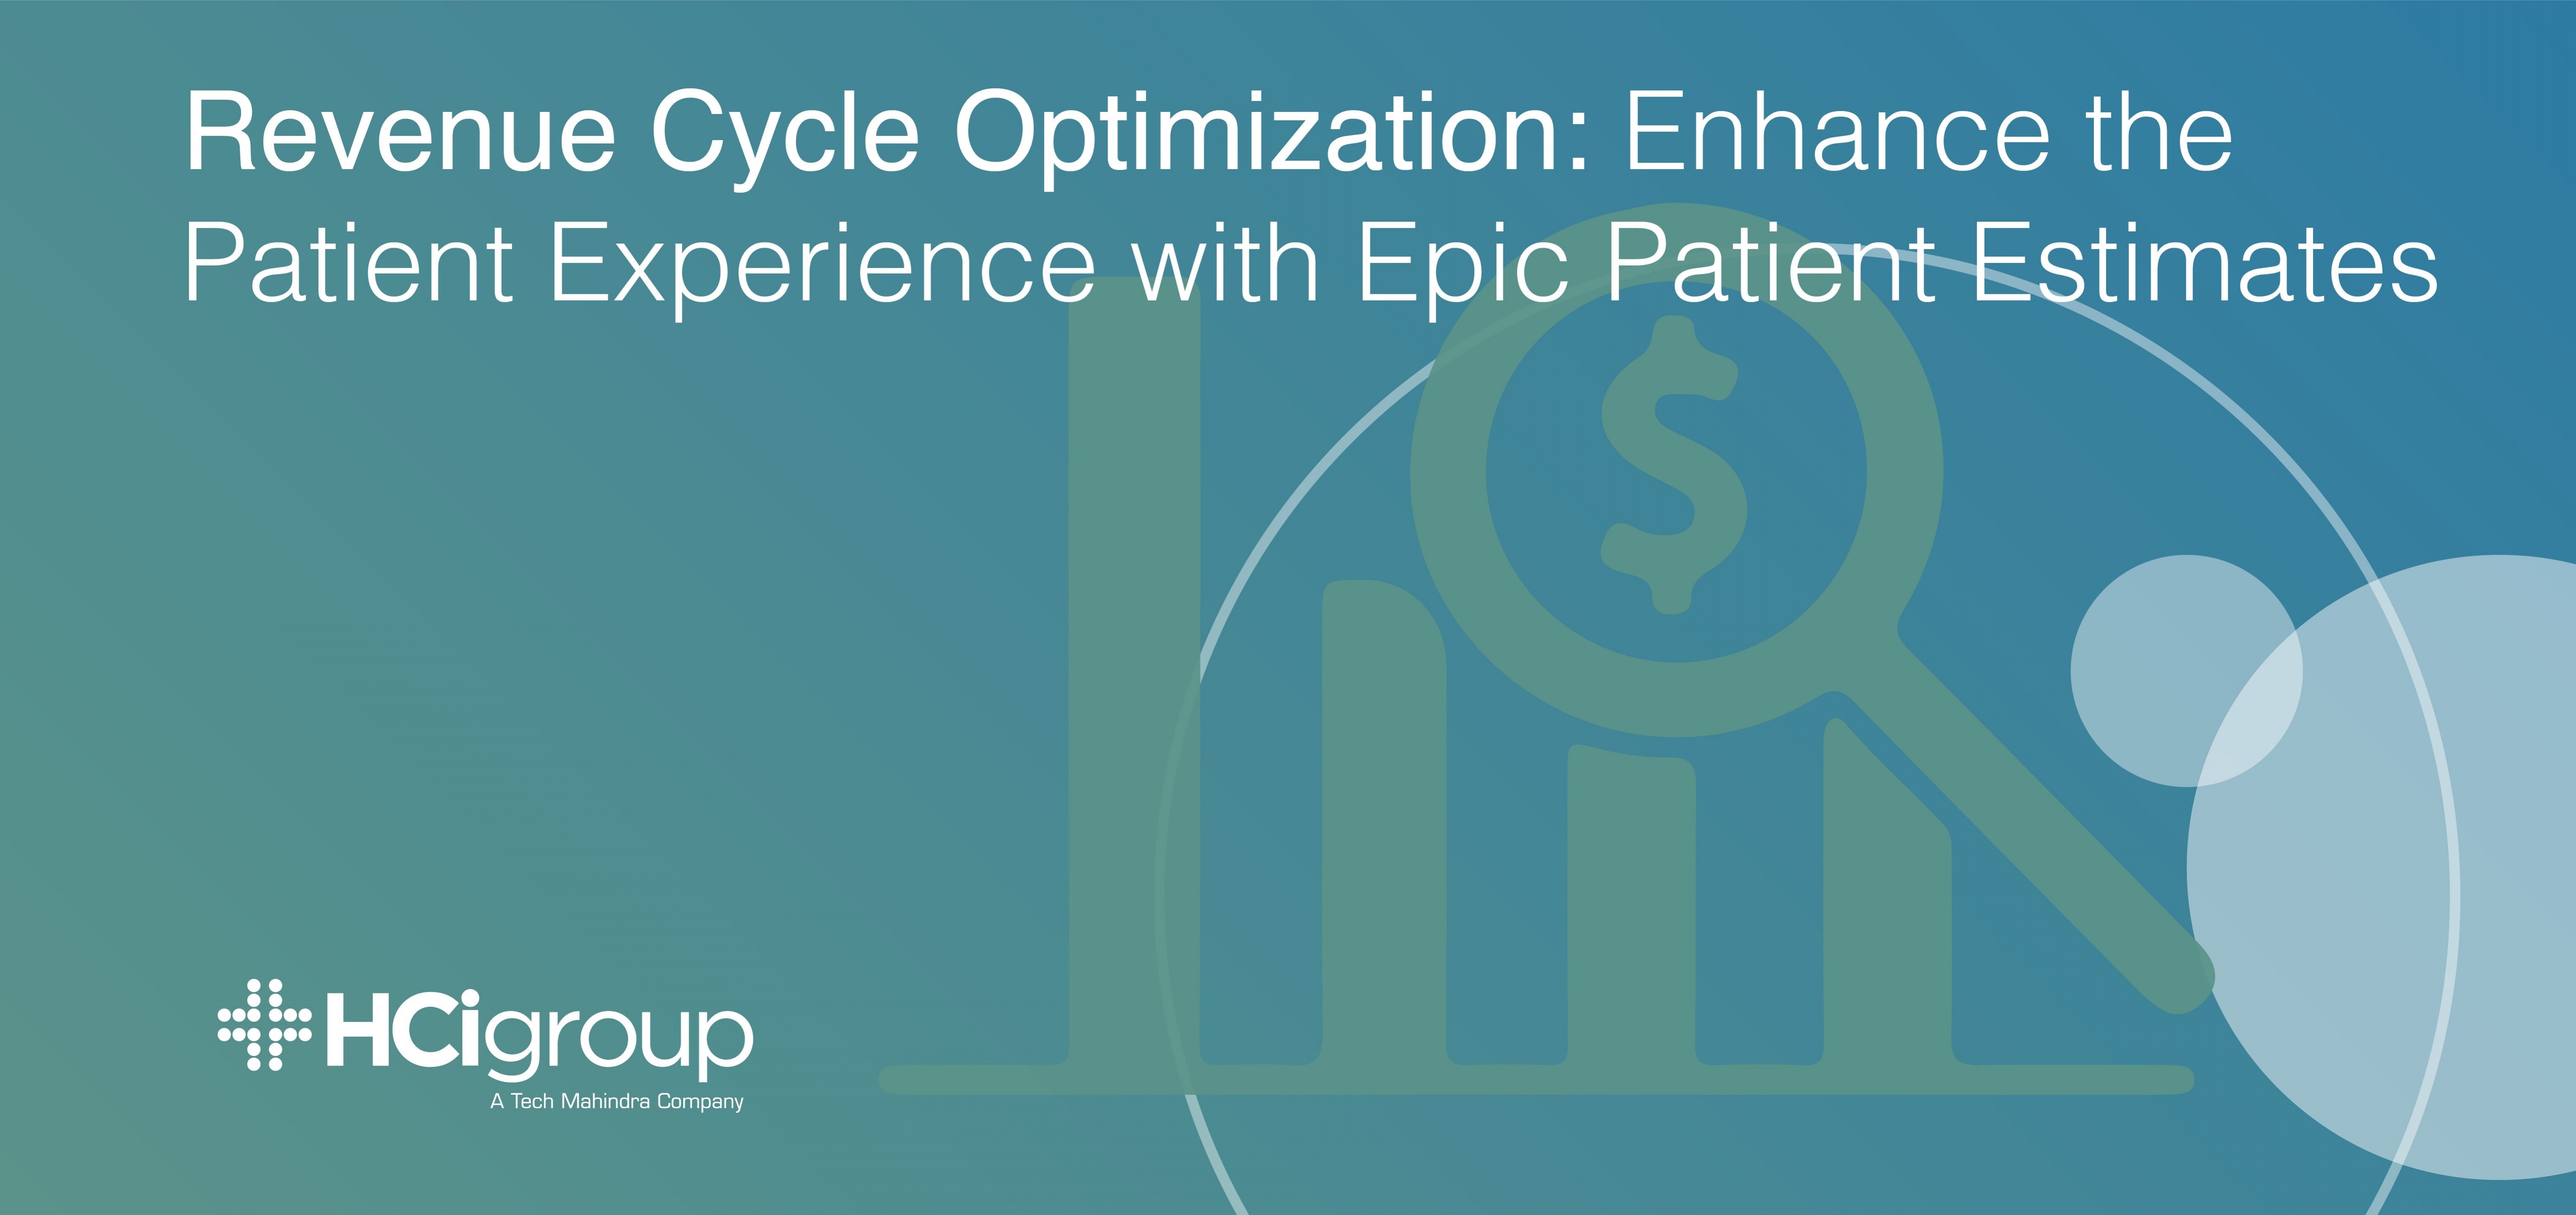 Revenue Cycle Optimization: Enhance the Patient Experience with Epic Patient Estimates